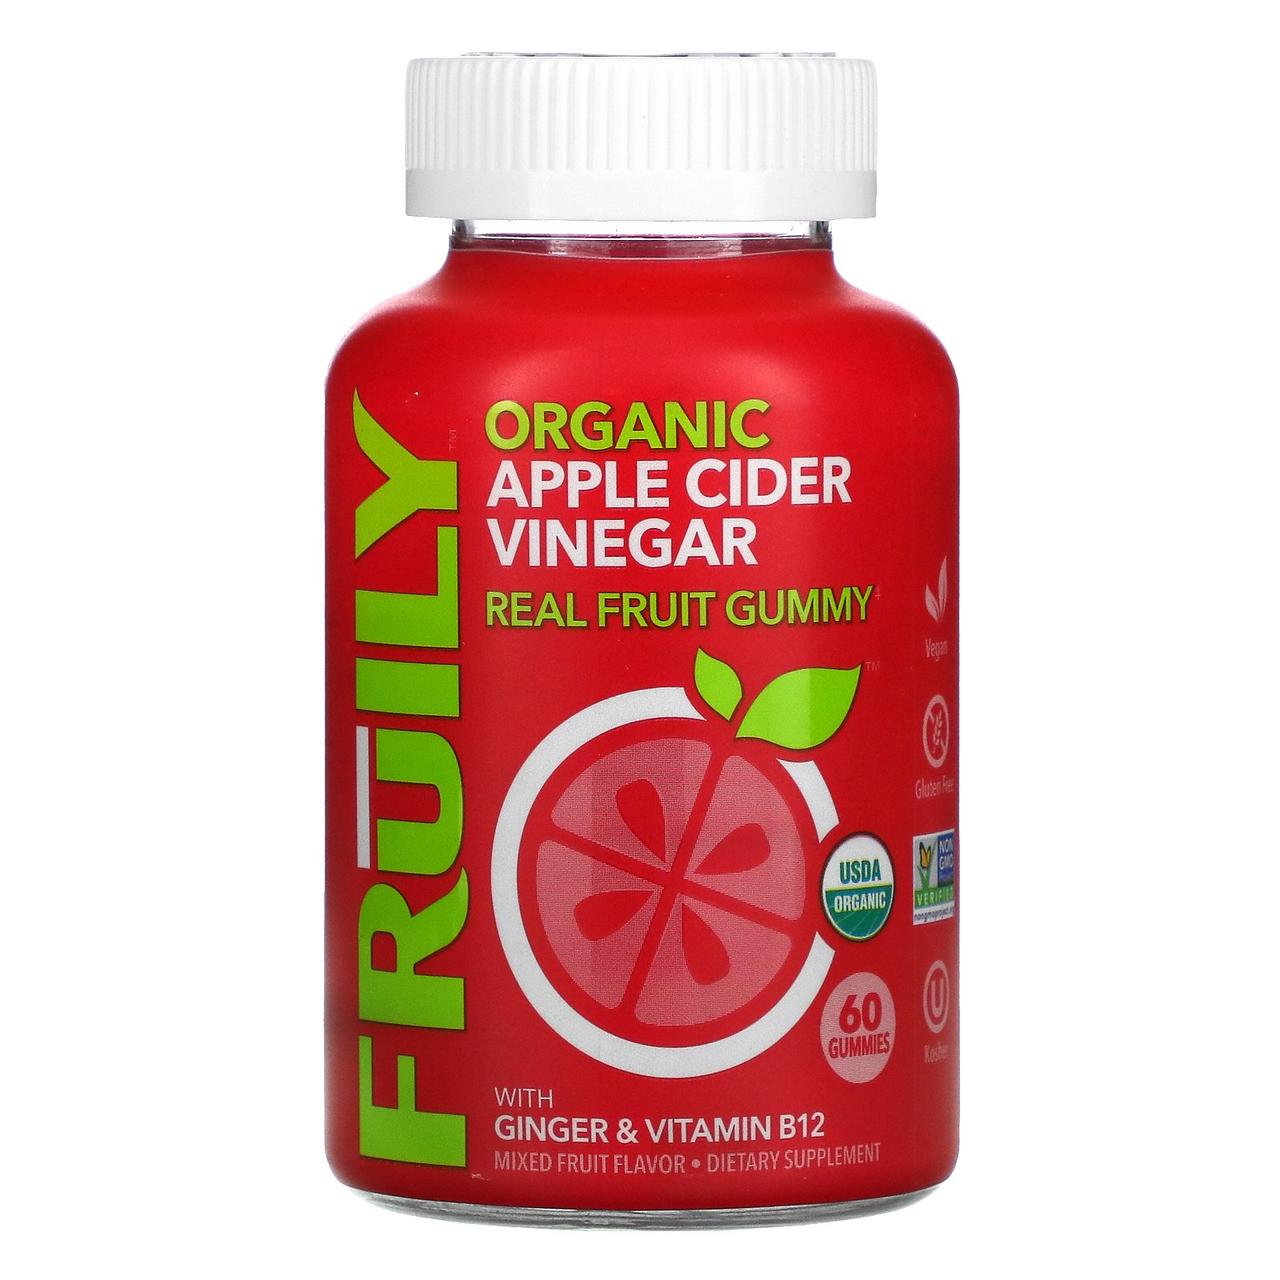 Органический яблочный уксус с имбирем и витамином B12, фруктовый микс, 60 жевательных конфет Fruily